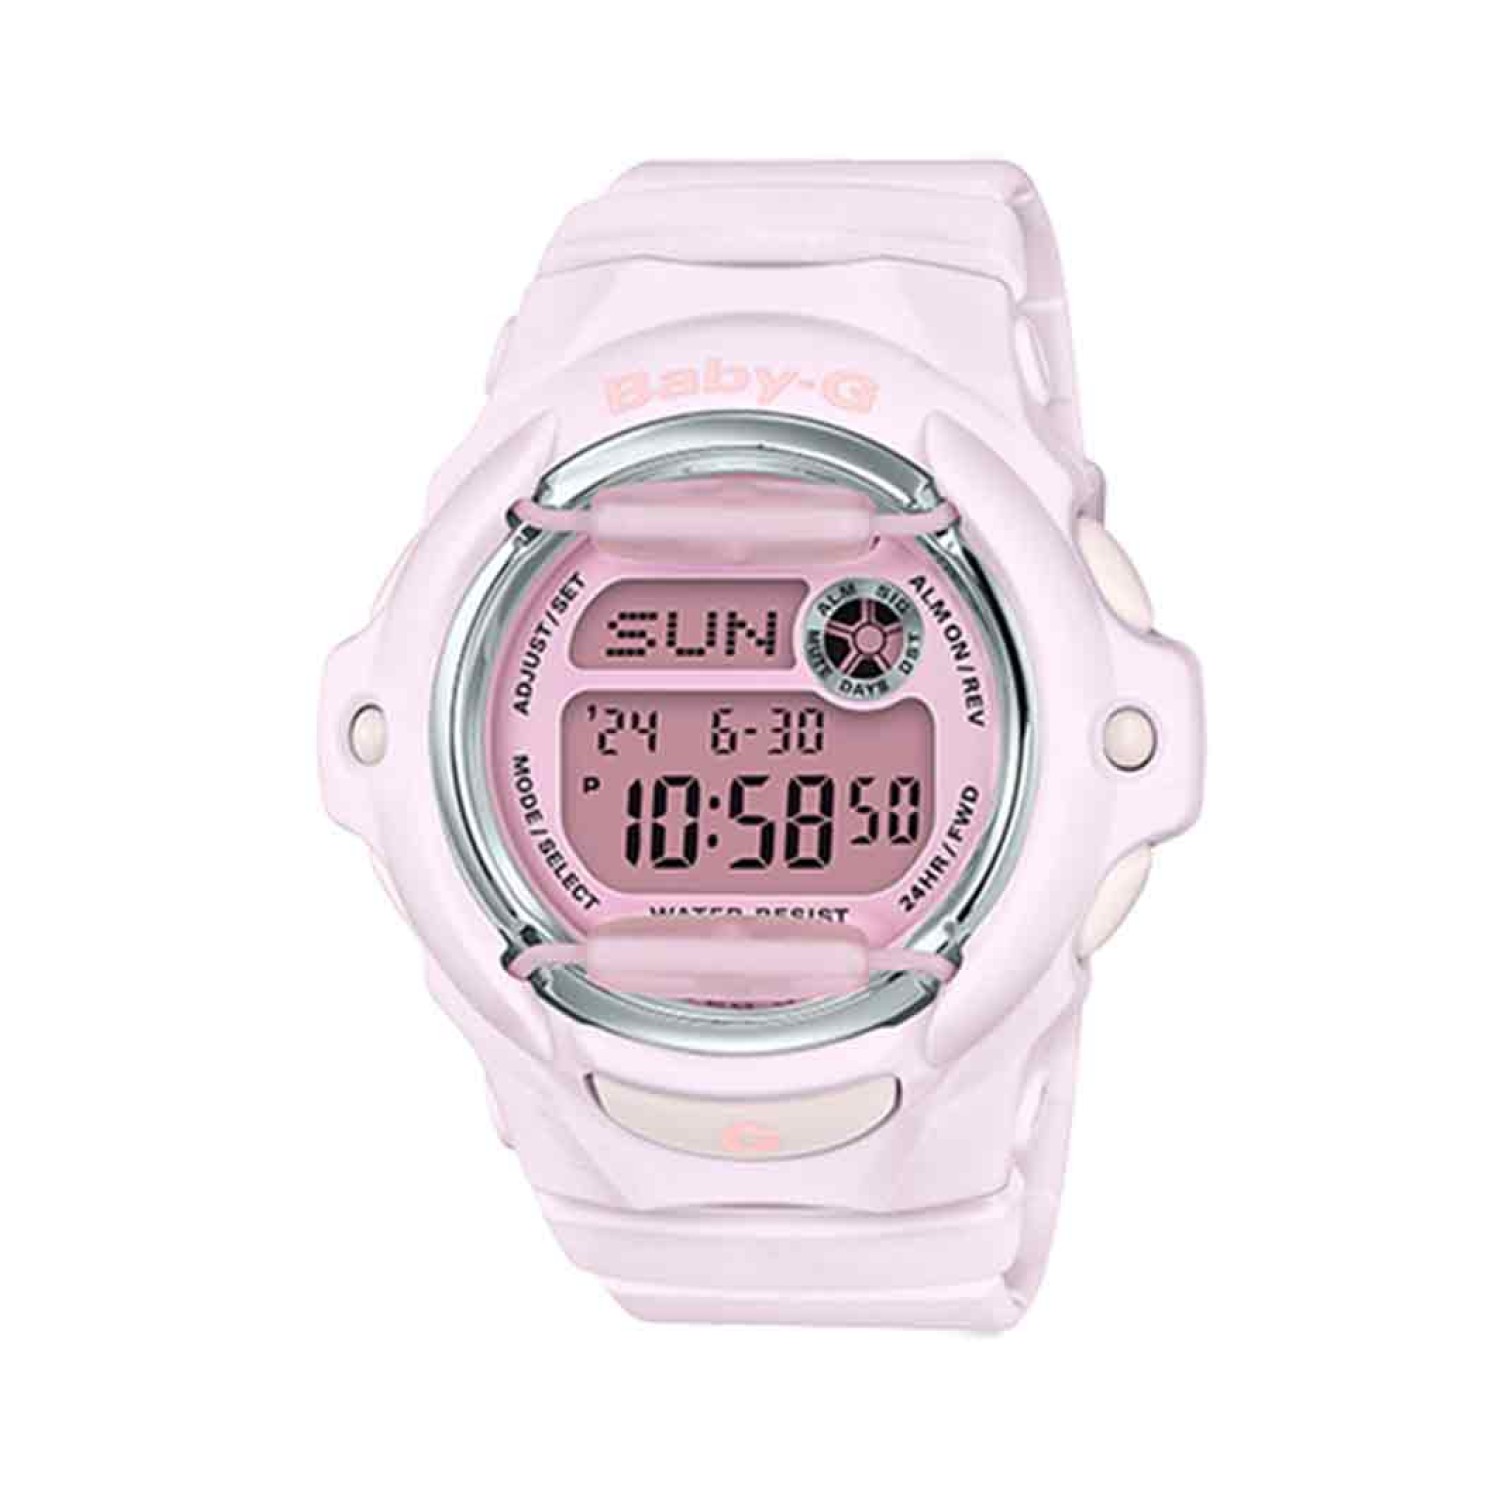 BG169M-4D Casio BabY-G Pink Series Watch.casio watches nz sale $219.00